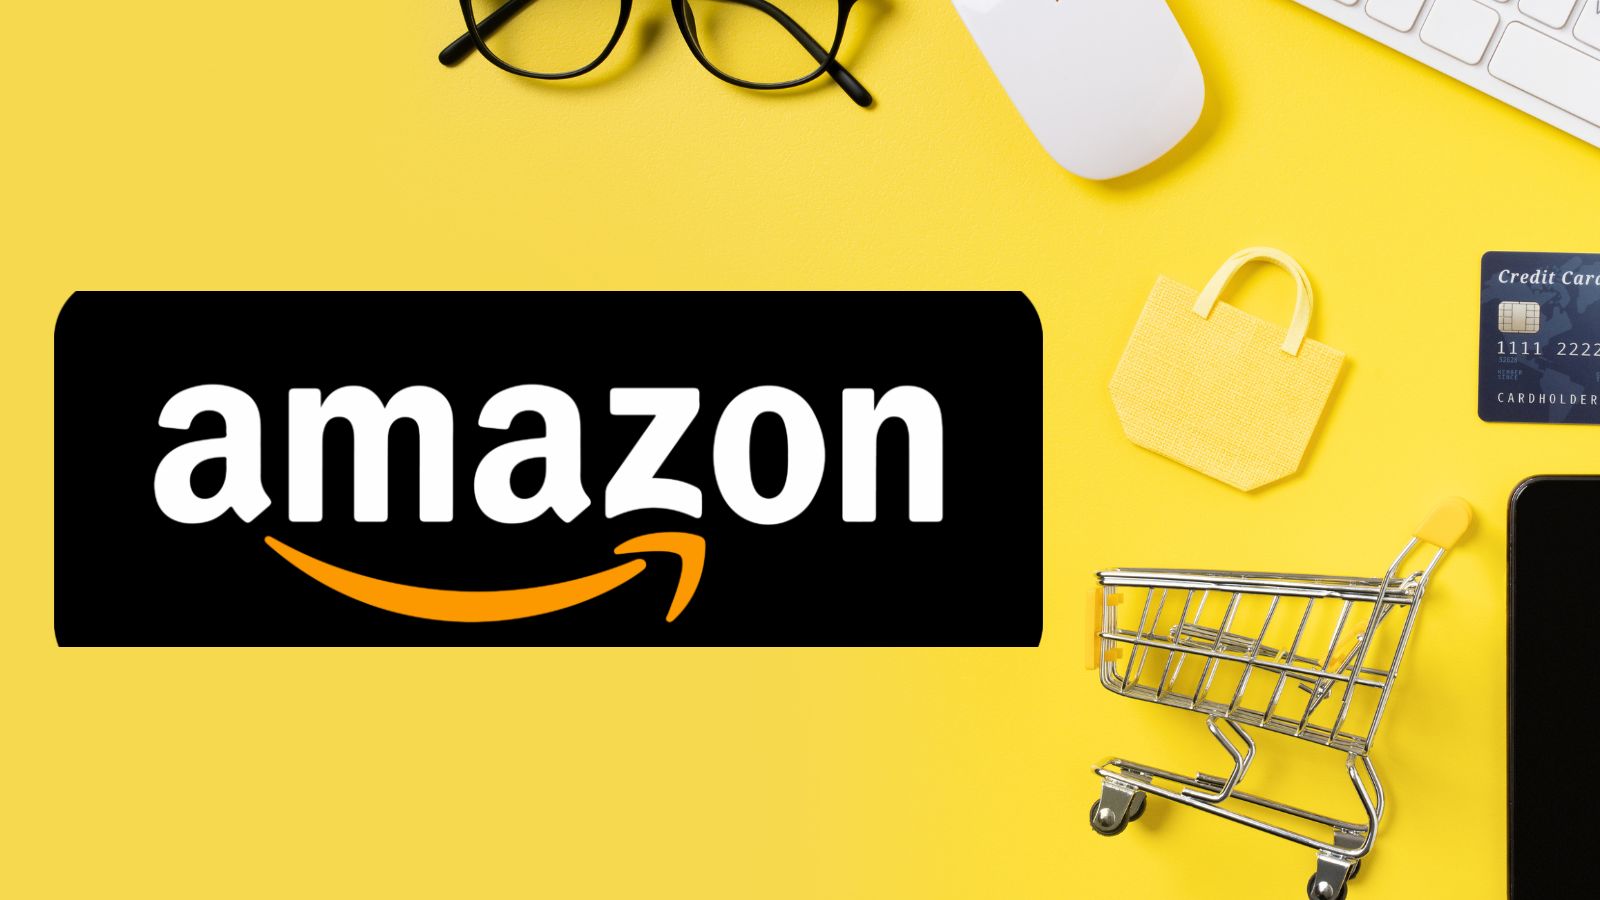 Amazon IMPAZZITA con offerte al 50% e prezzi GRATIS